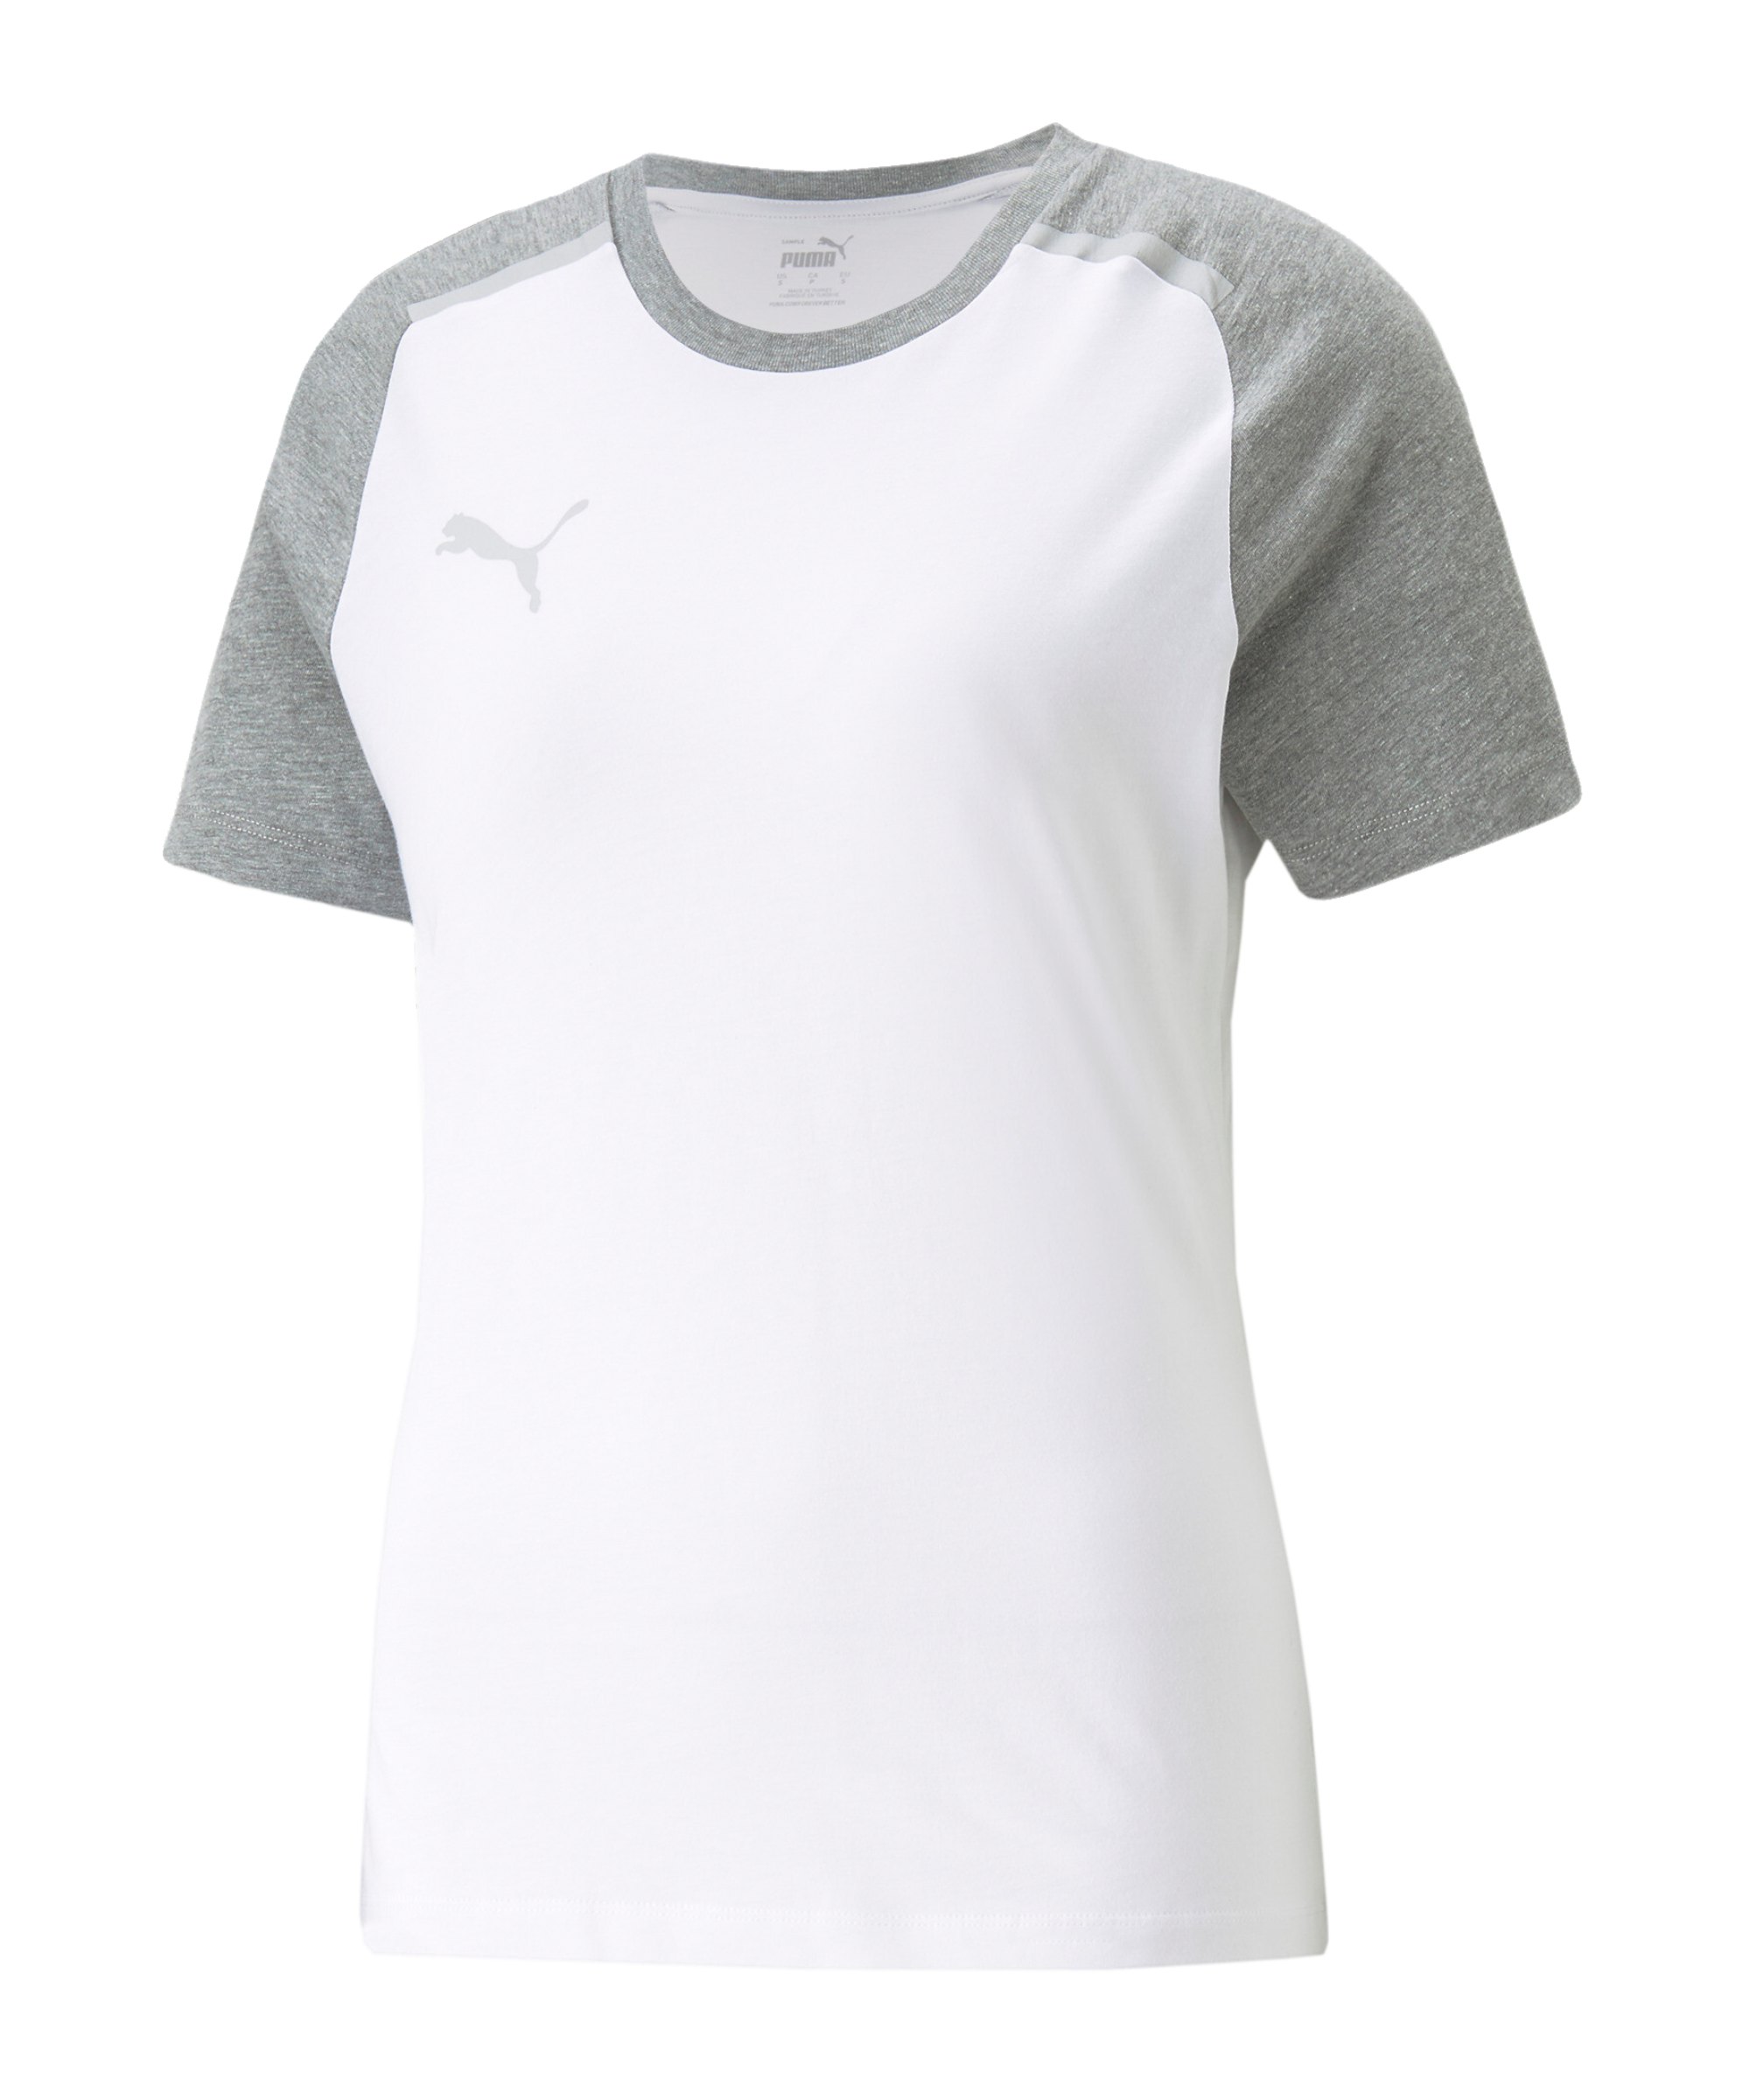 PUMA teamCUP weiss Damen Casuals F04 T-Shirt Weiss